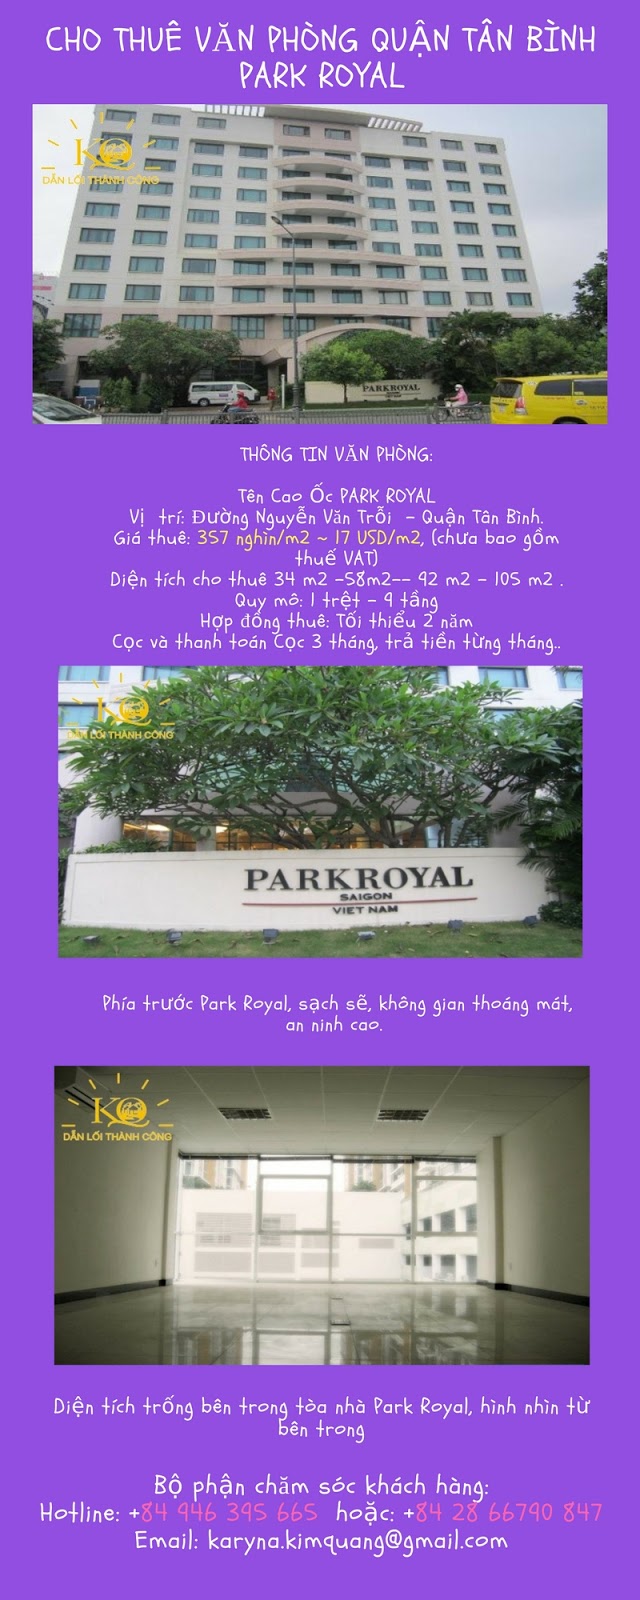 Cho thuê văn phòng quận Tân Bình Park Royal